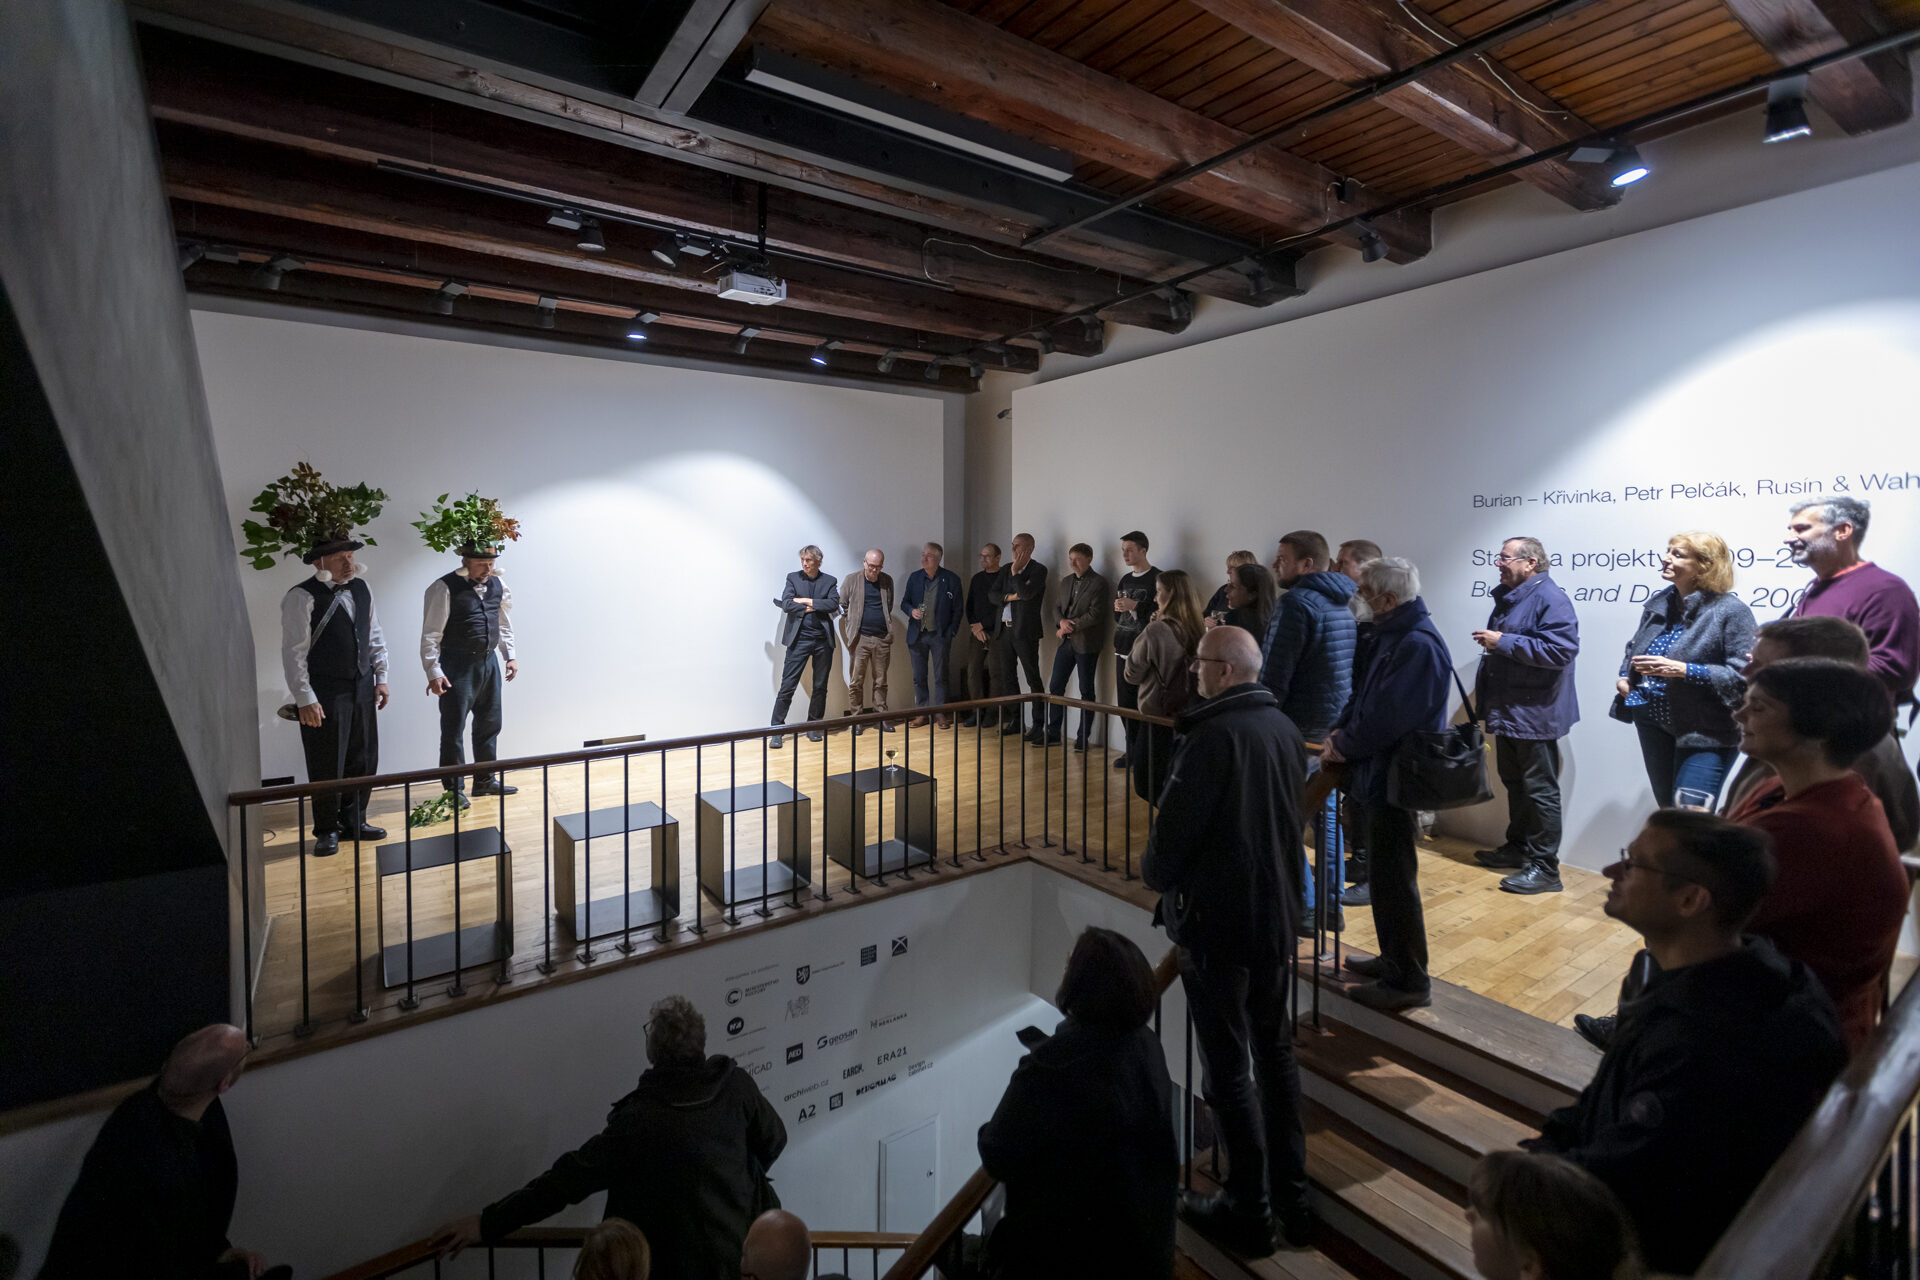 Stavby a projekty 2009–2019, Galerie Jaroslava Fragnera